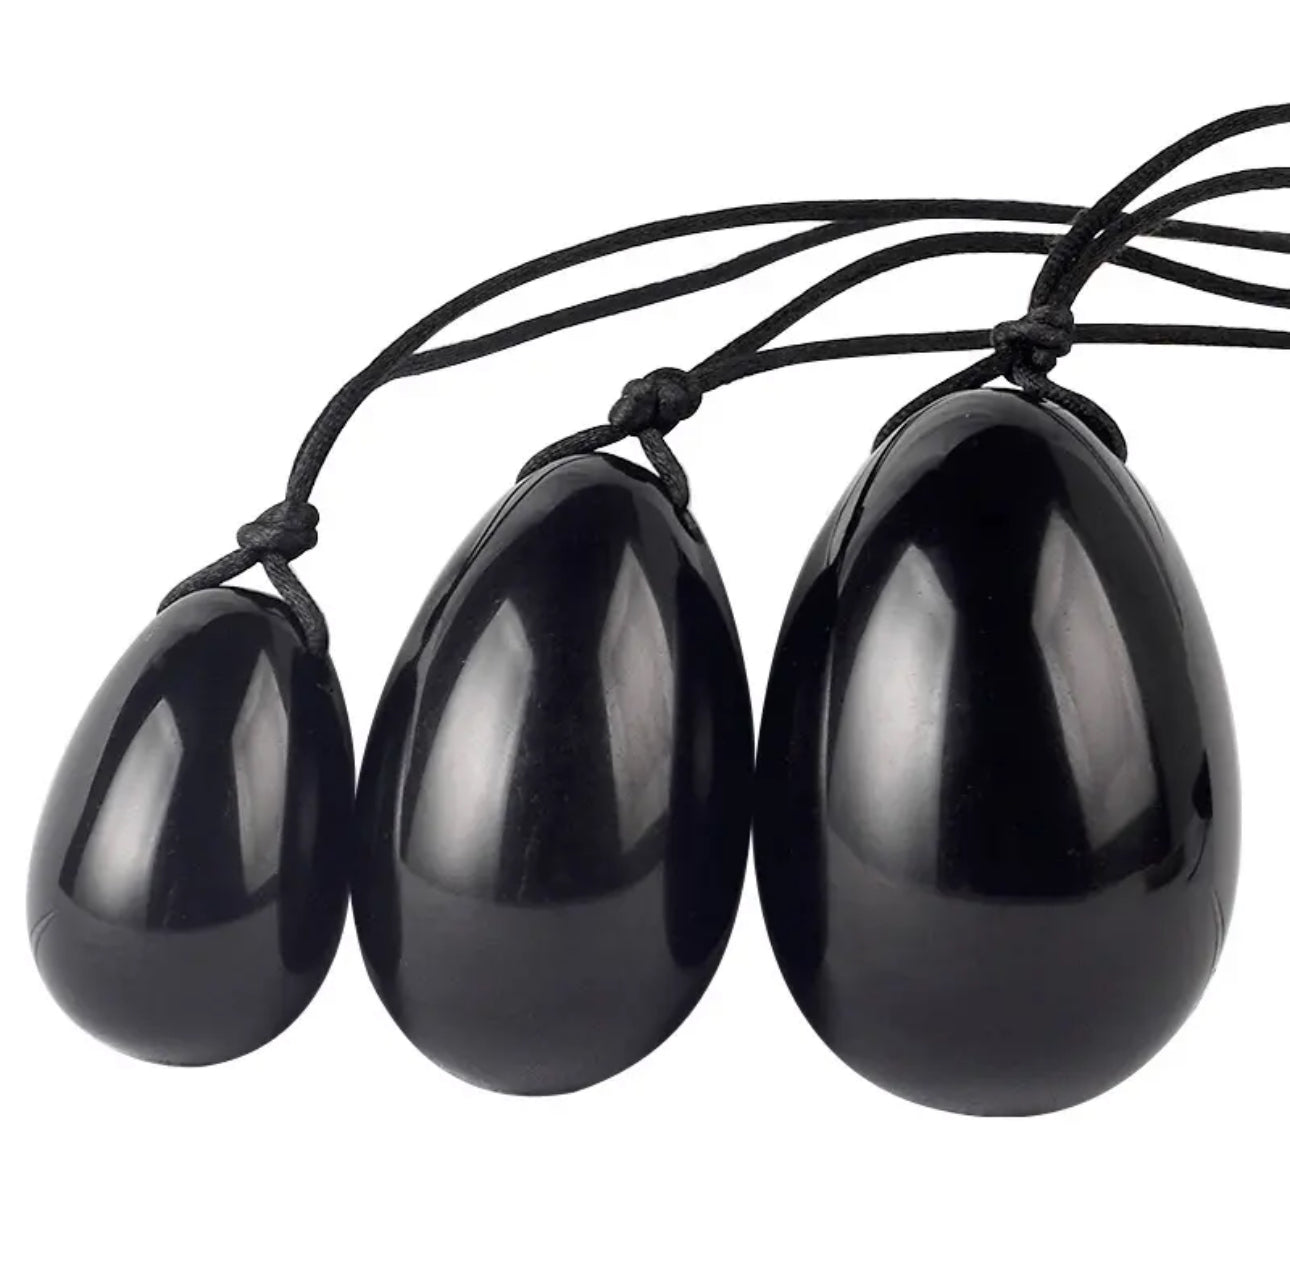 Set de Huevos Yoni Obsidiana Negra: Fortalece tu suelo pélvico con el huevo Yoni natural (huevos en 3 tamaños)